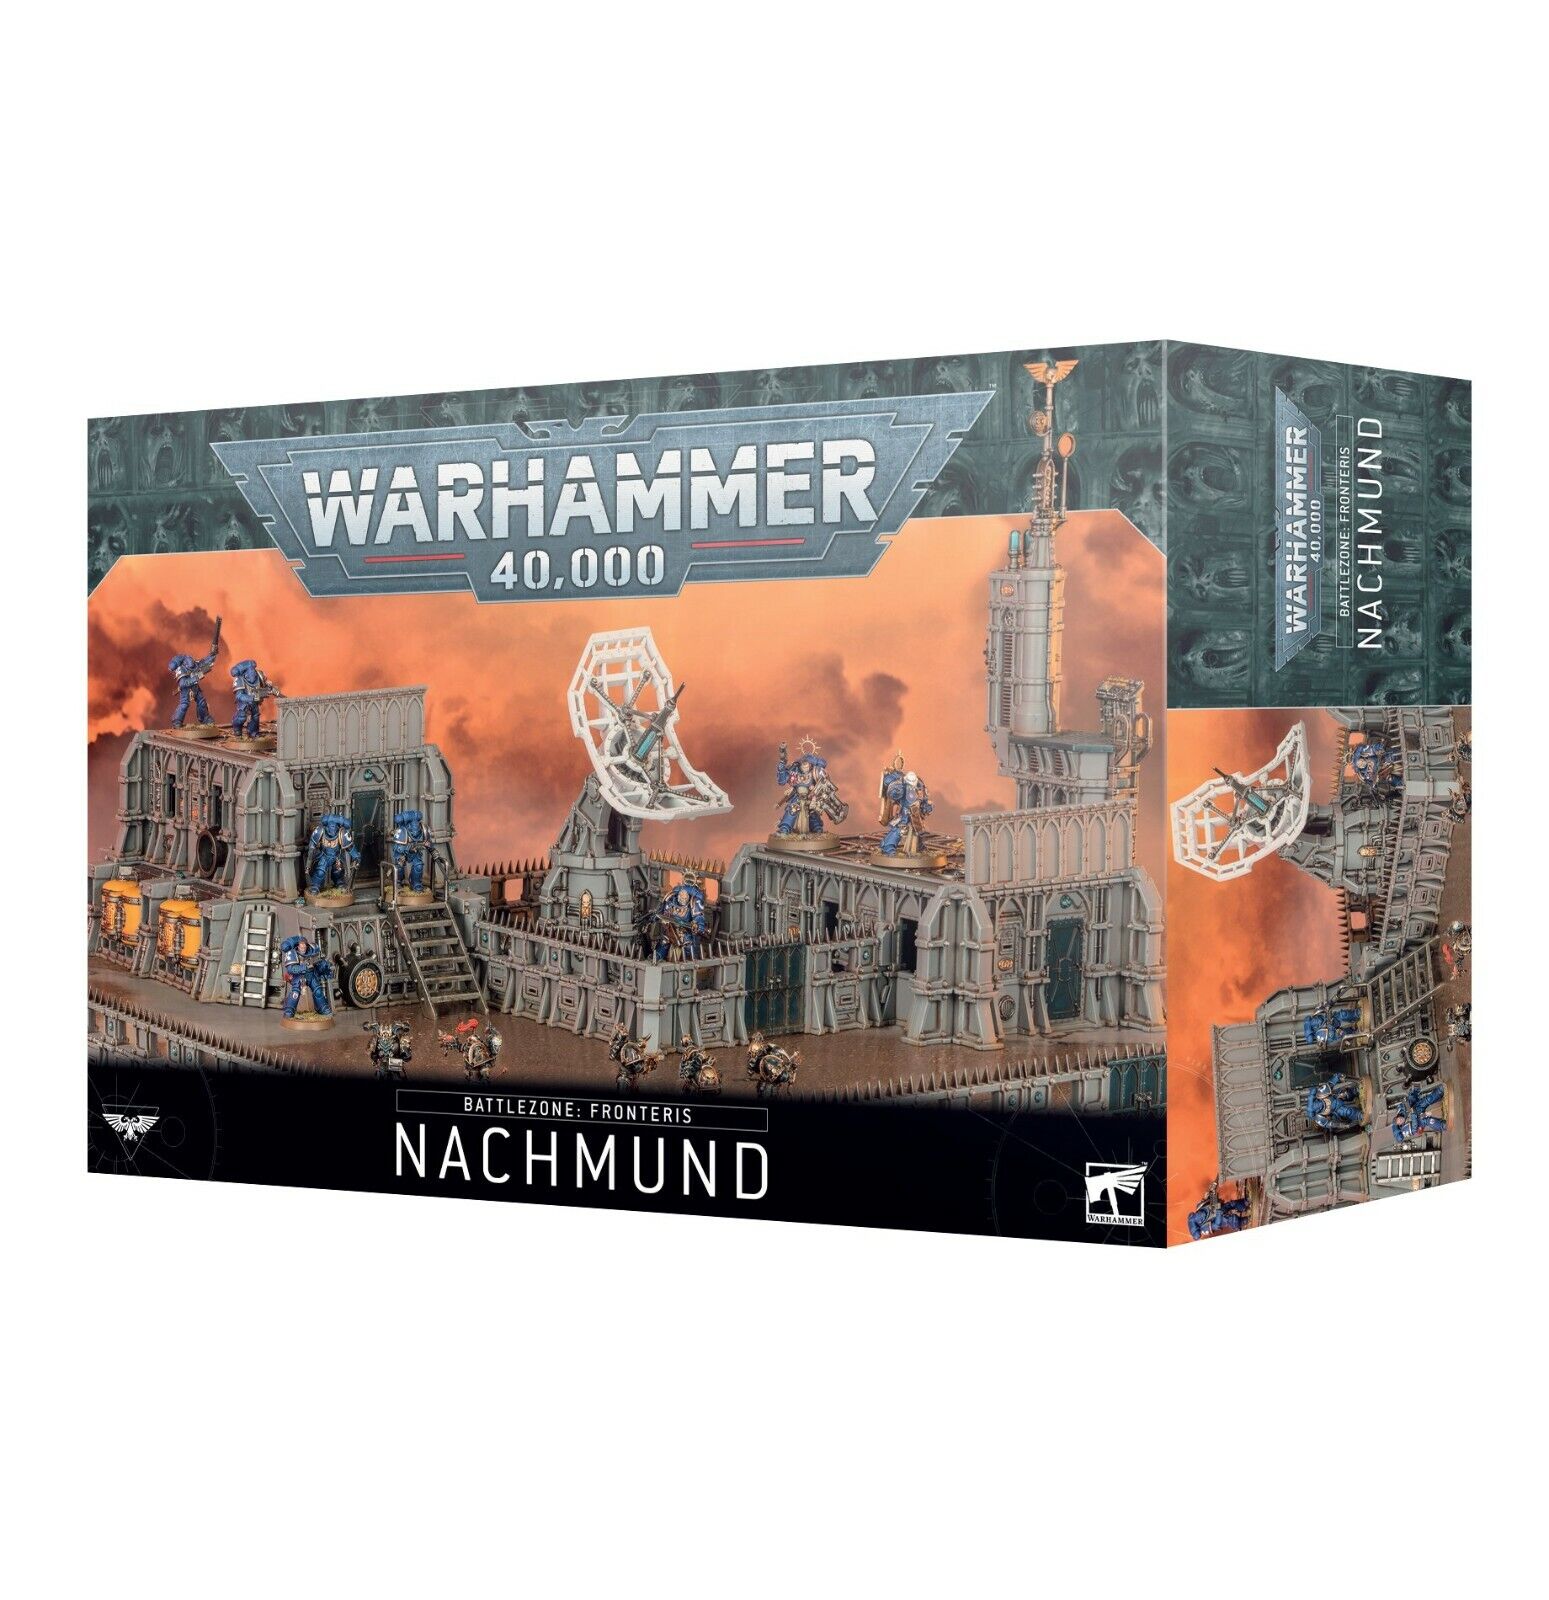 Fronteris Nachmund Battlezone Terrain Warhammer 40K NIB